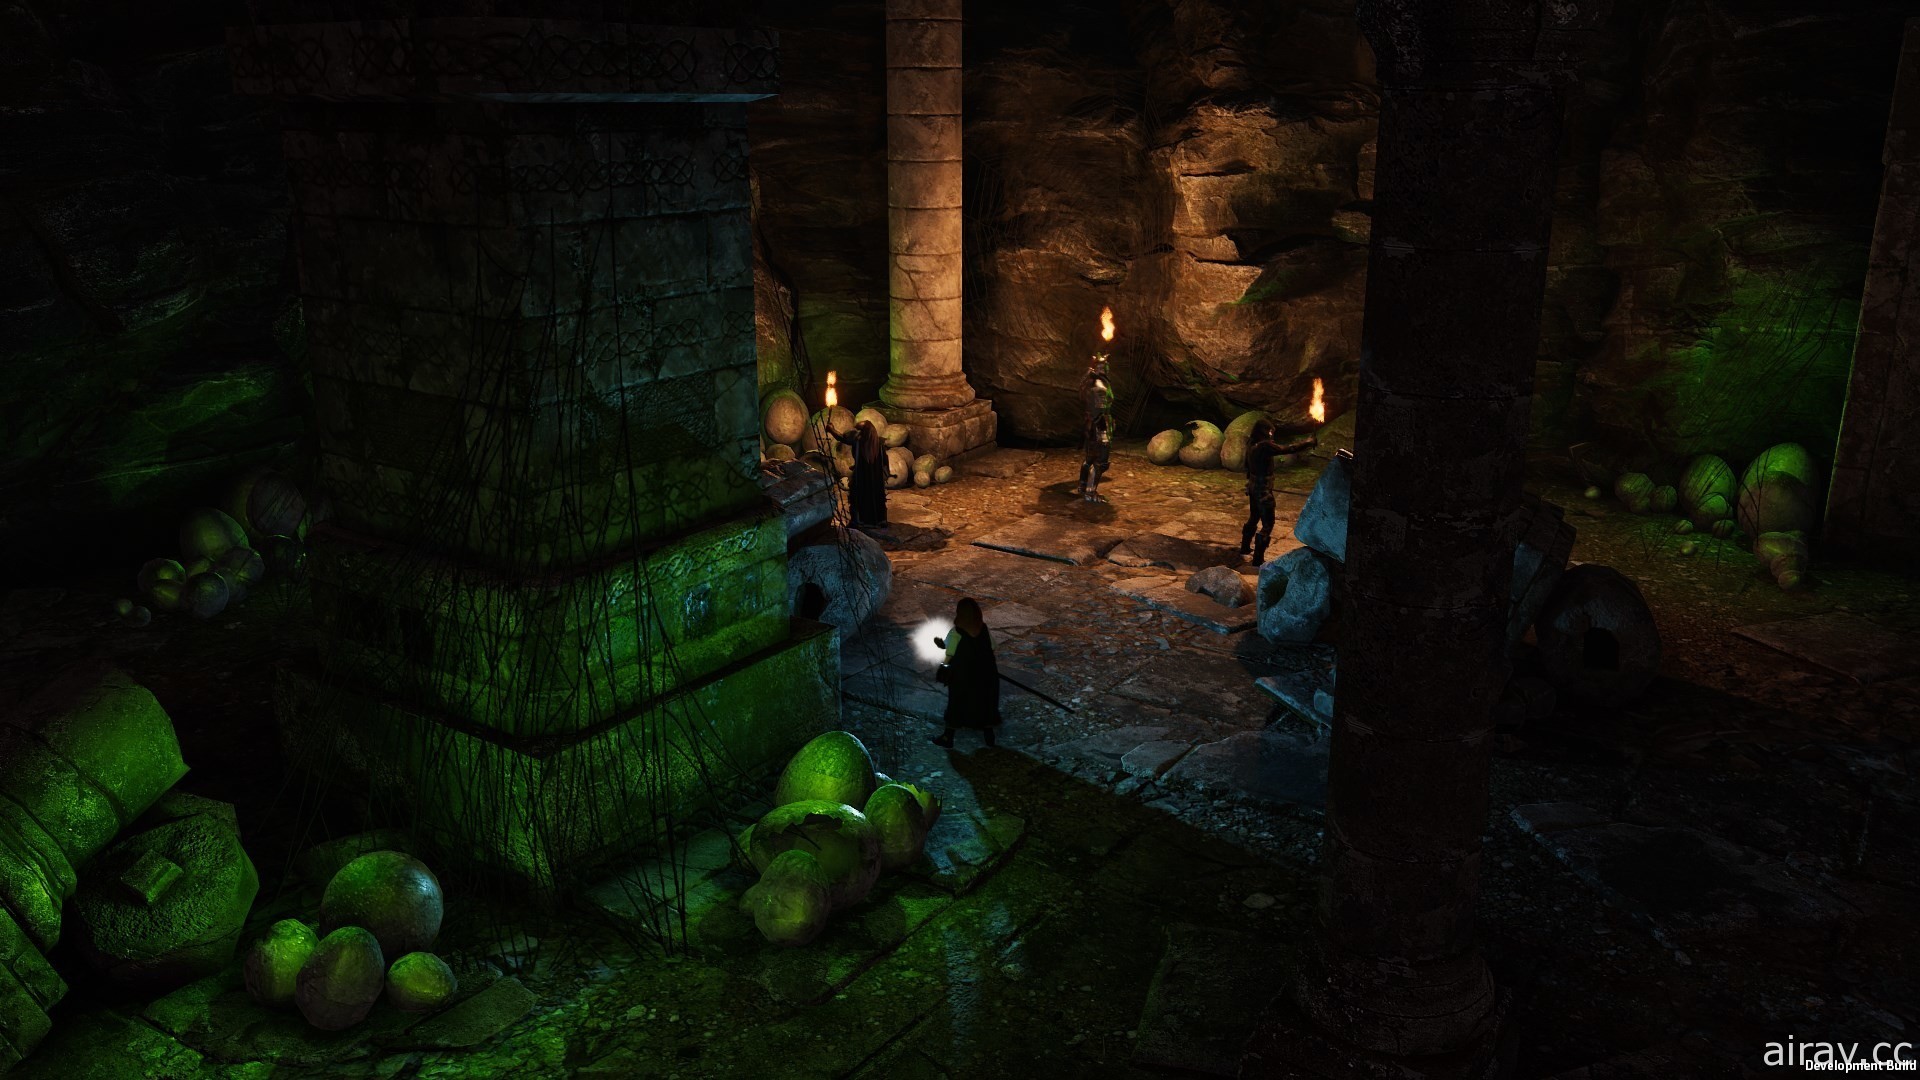 采用龙与地下城规则 RPG 新作《光芒：魔导师之冠》释出免费试玩版 20 日展开抢先体验